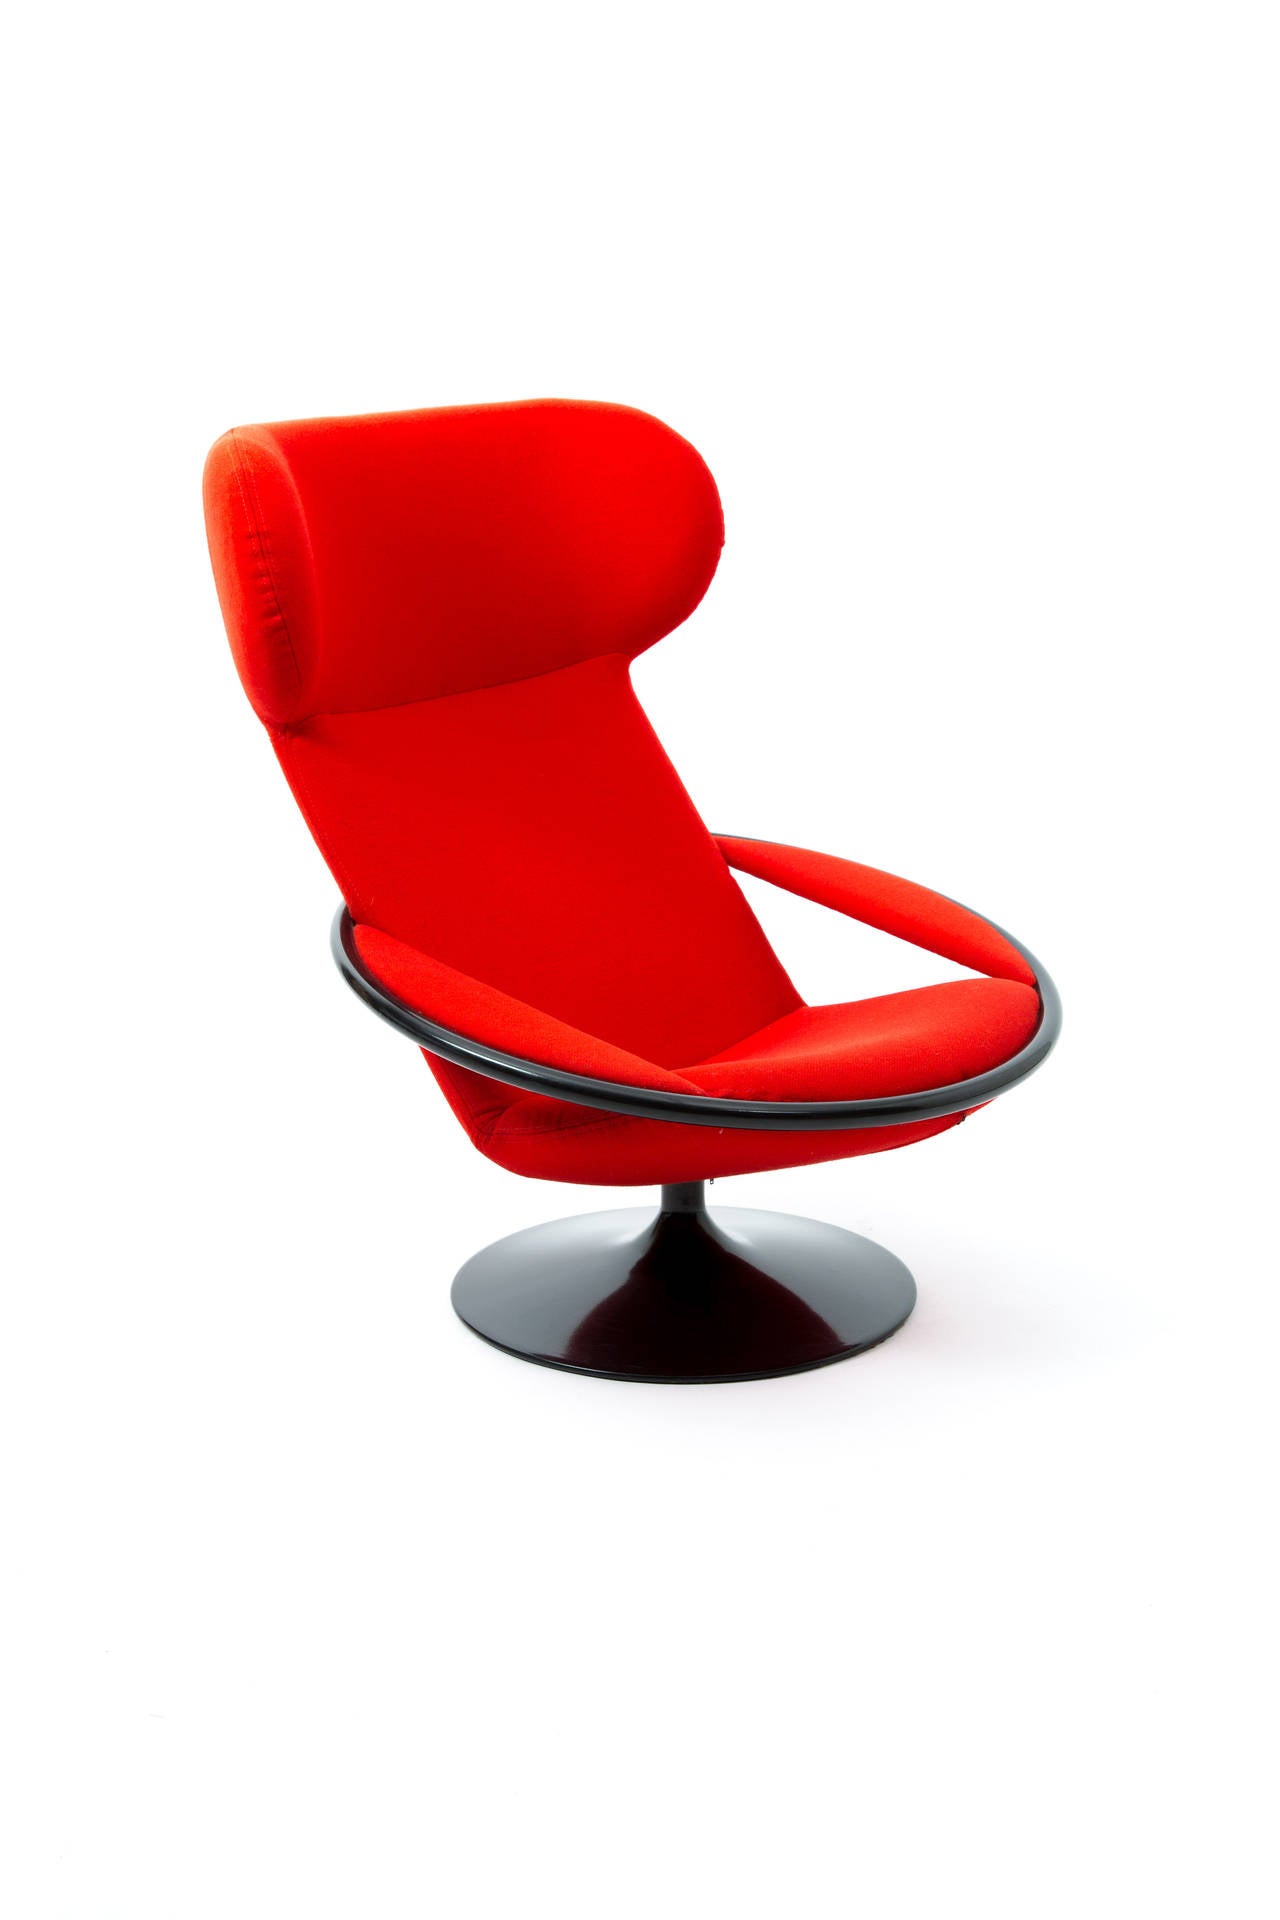 Mid-20th Century Artifort Dutch Design Geoffrey Harcourt Lounge Chair